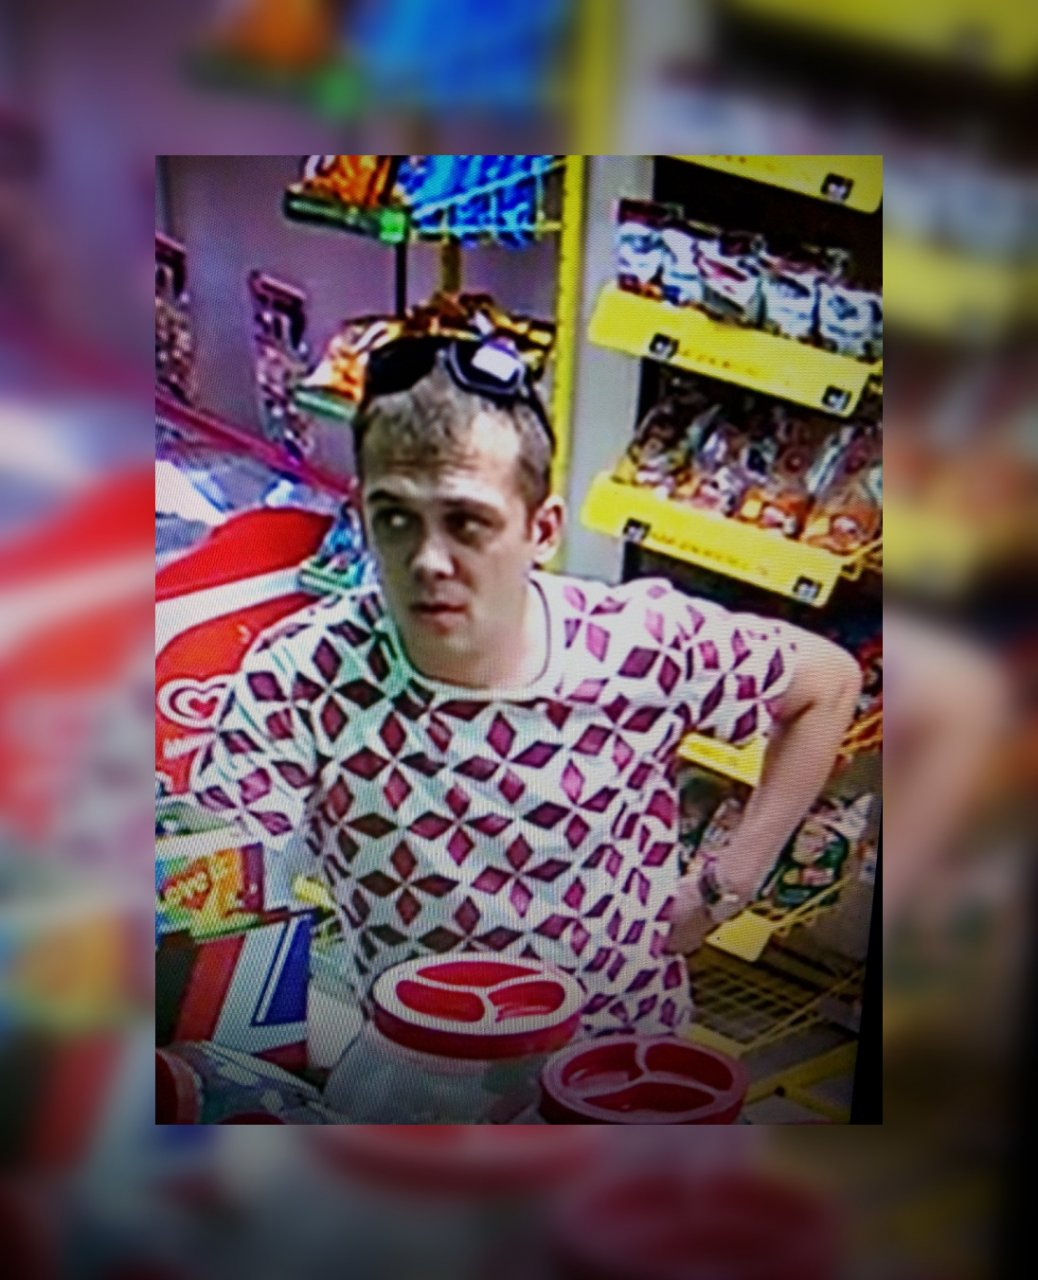 В Саранске разыскивают мужчину, который подозревается в краже телефона из магазина разливного пива